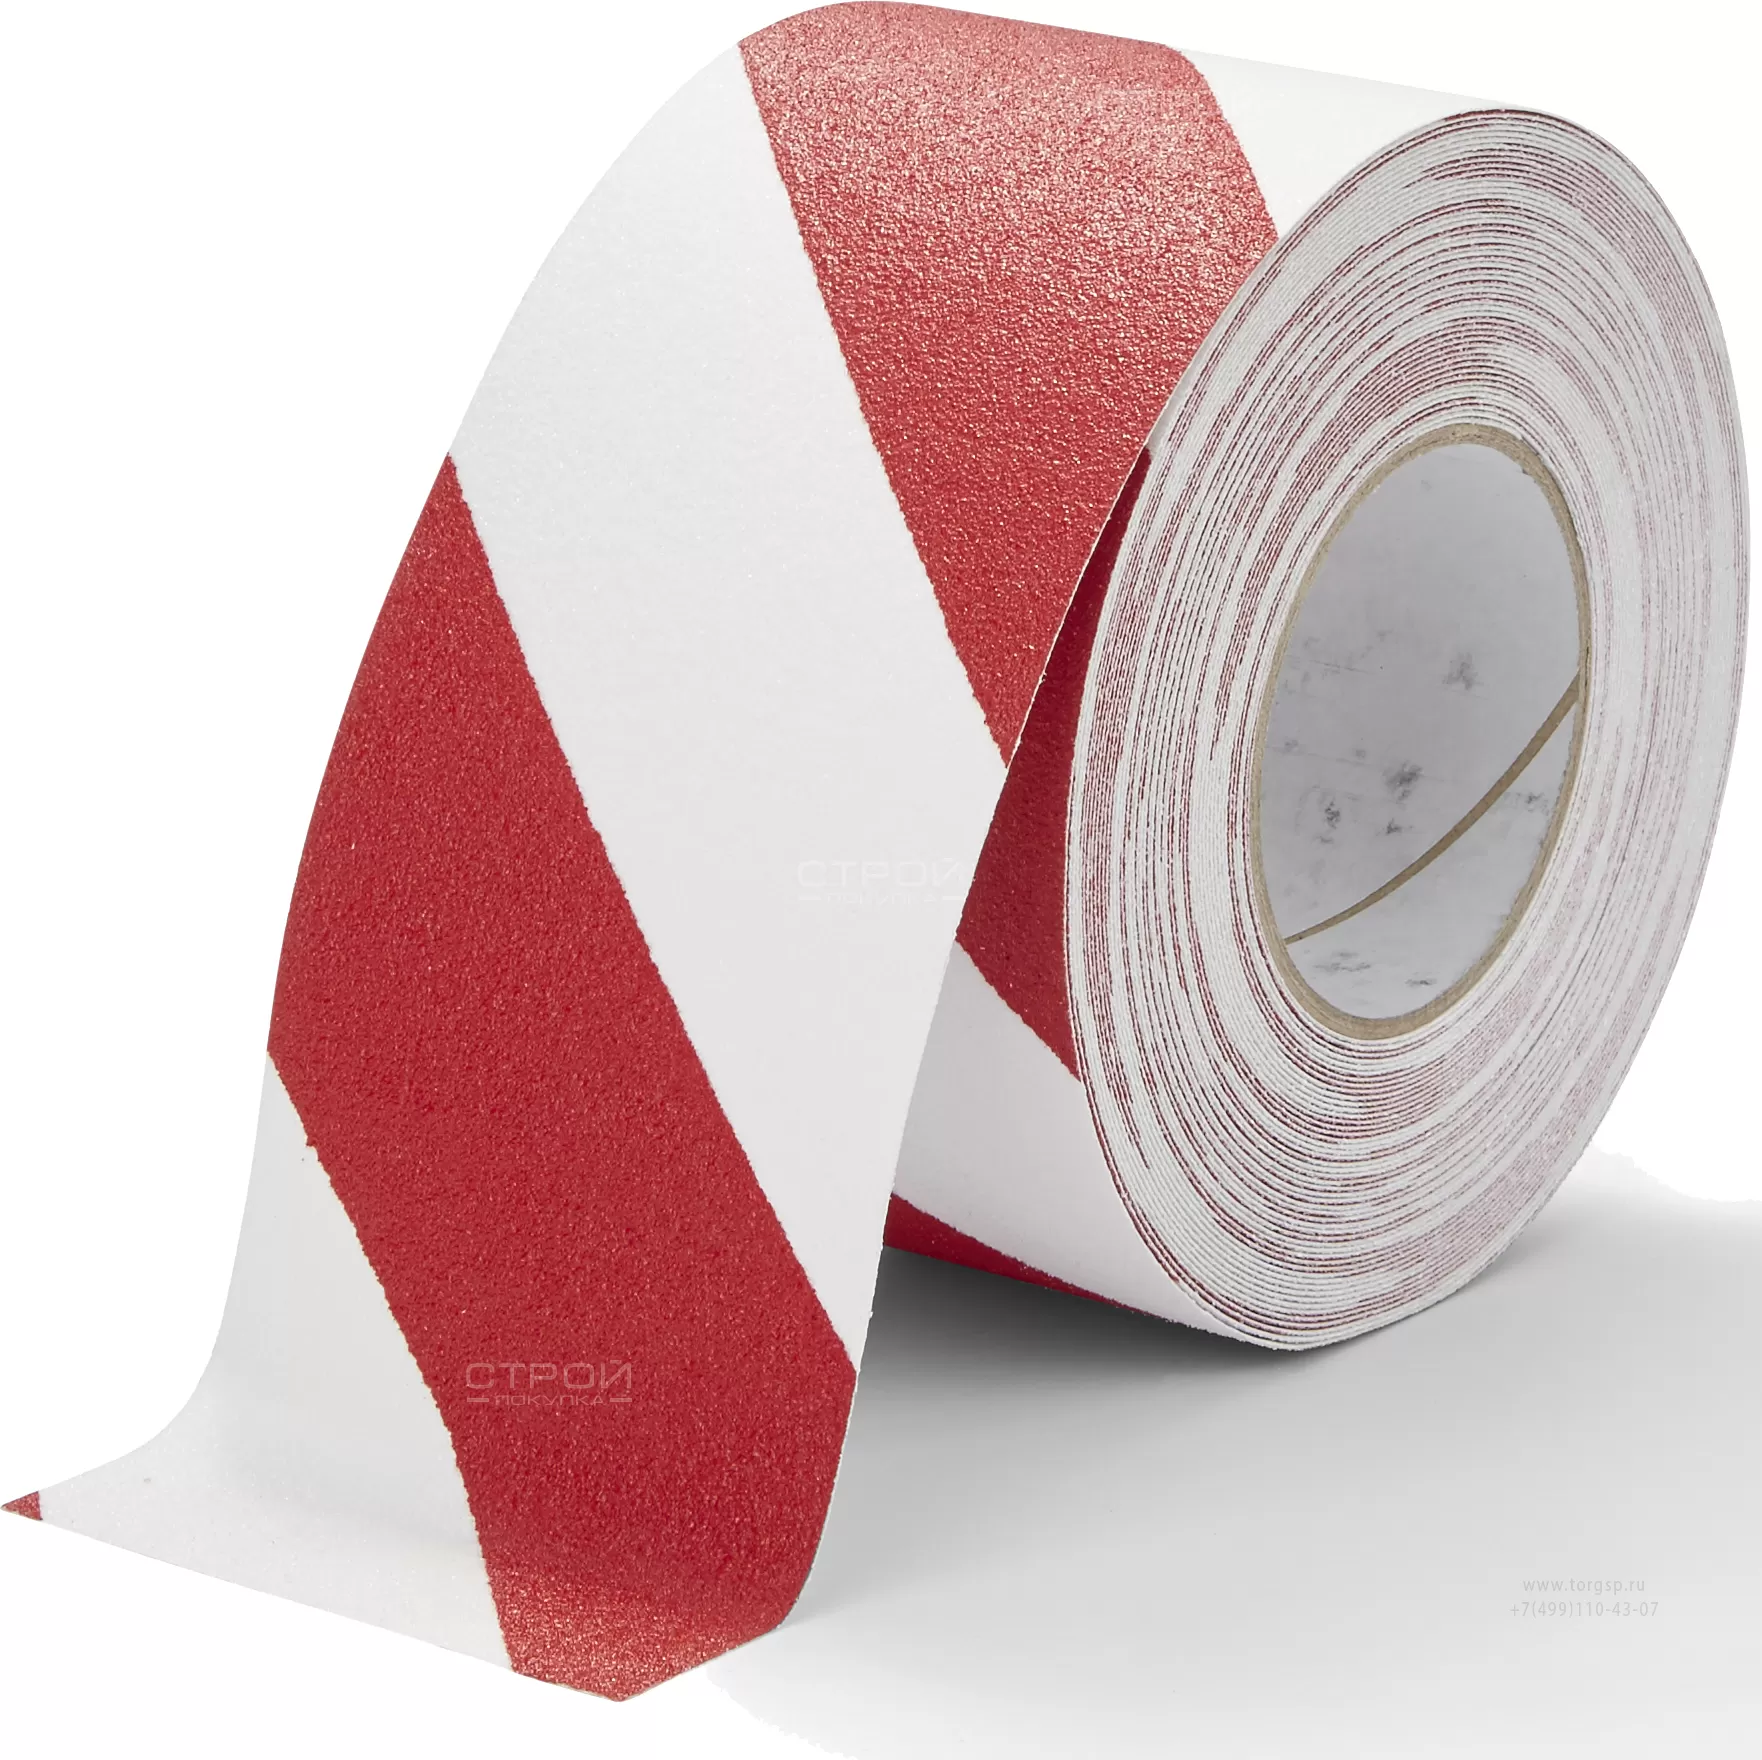 Лента Heskins самоклеющаяся красно-белая с абразивной поверхностью против скольжения, ширина 10 см